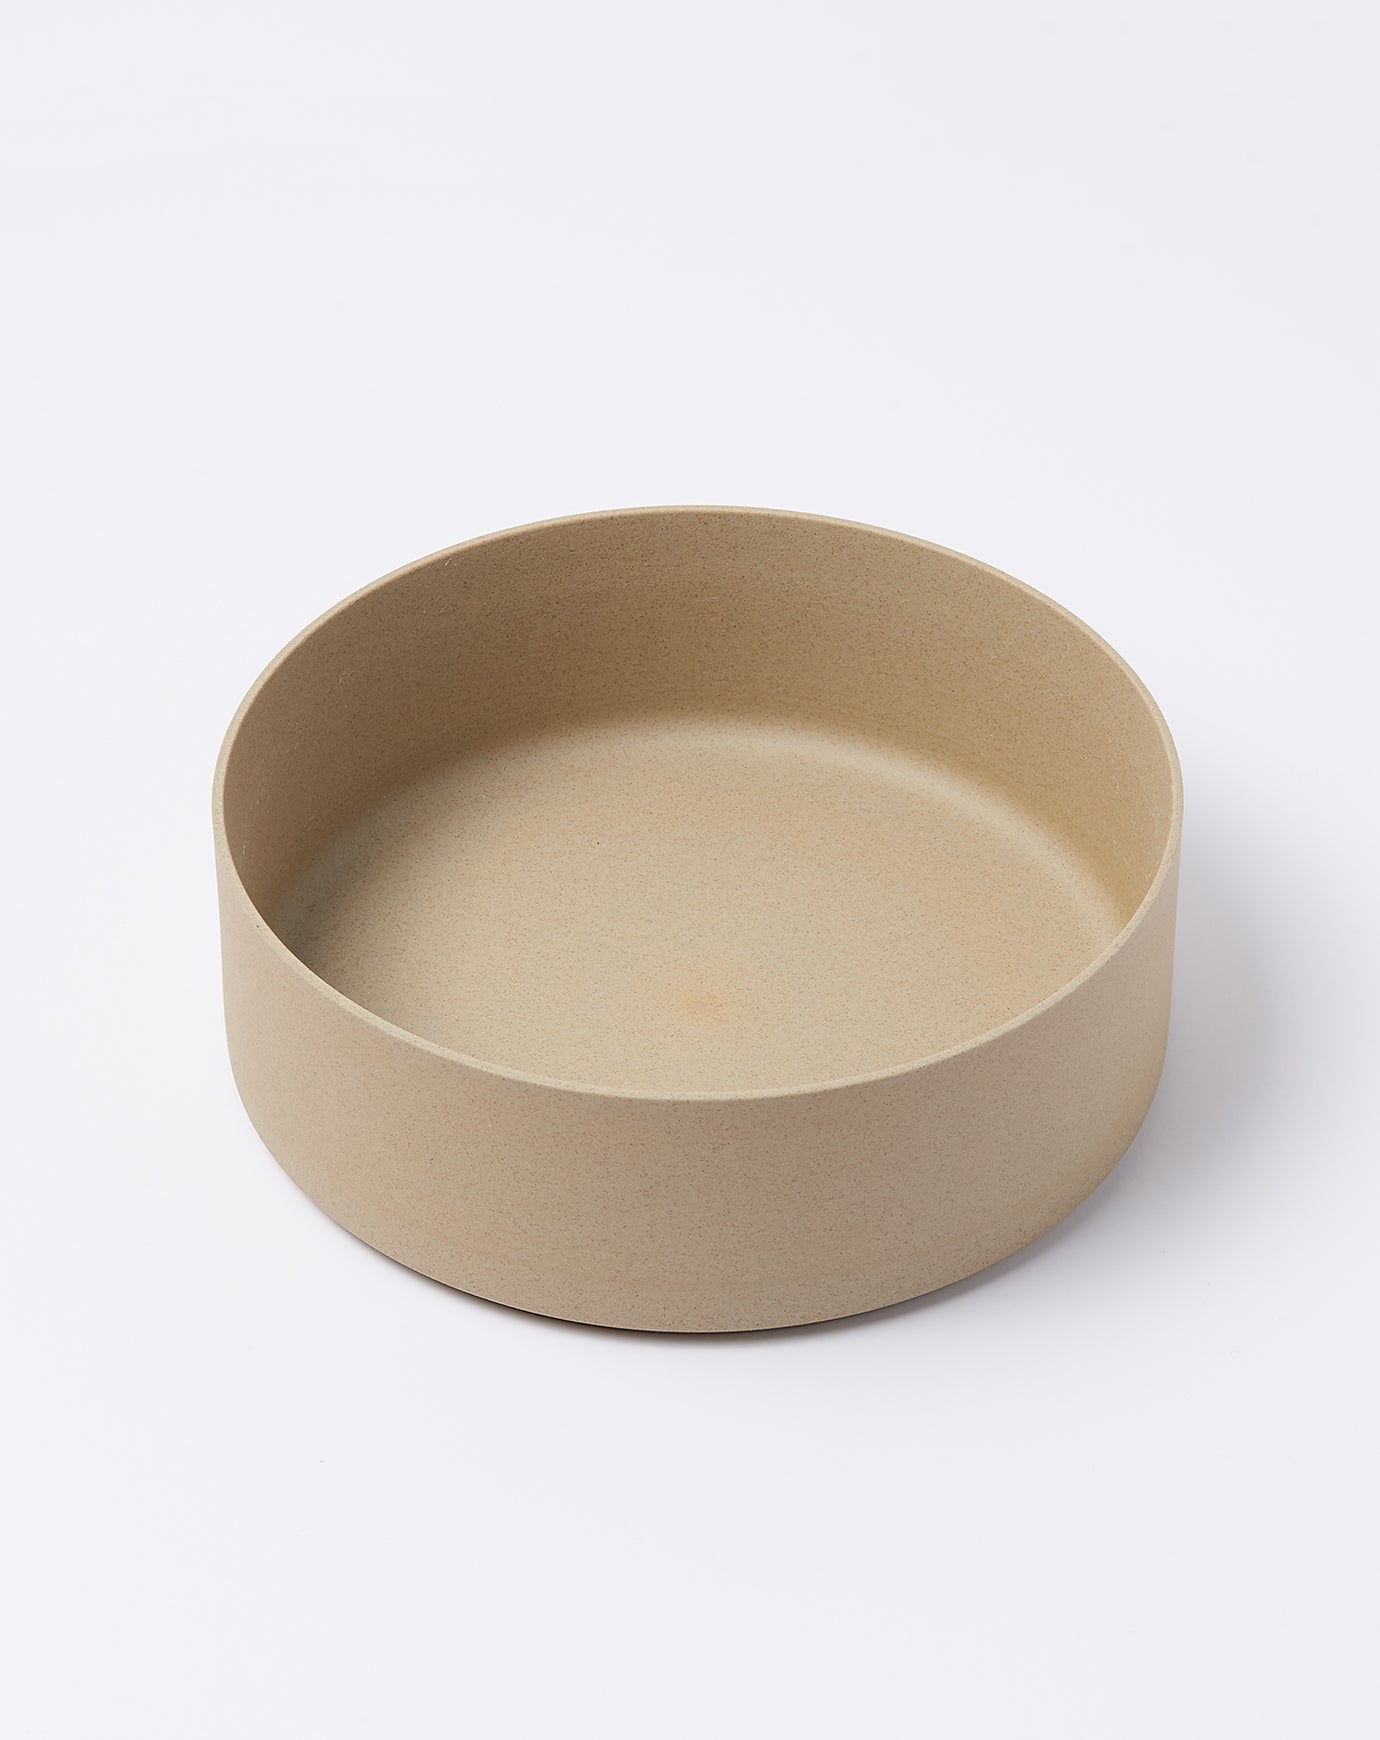 Hasami Porcelain Bowl in Natural